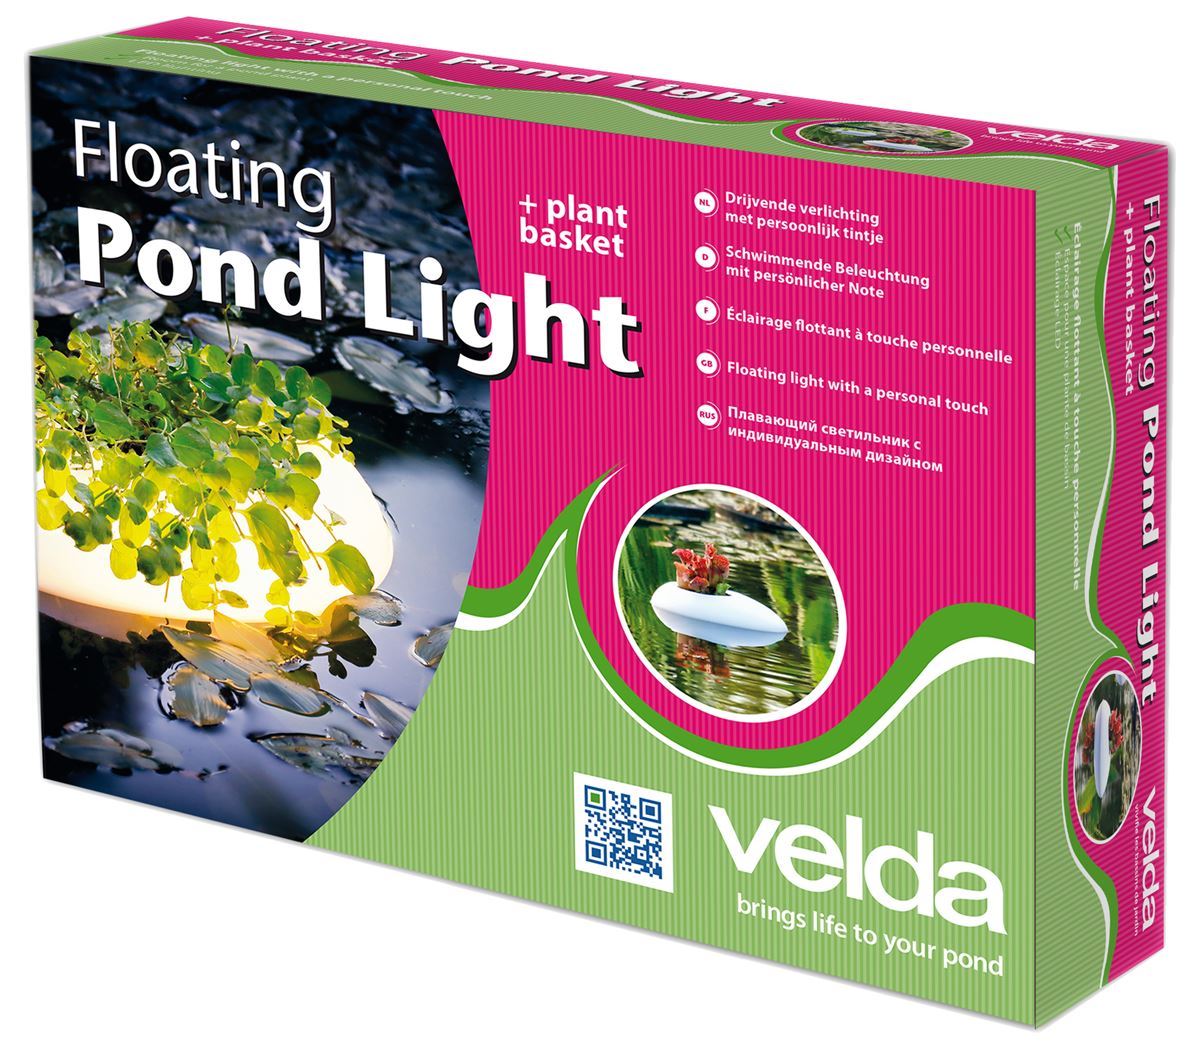 Velda-Floating-Pond-Light-drijvend-lampje-met-plaats-voor-je-favoriete-vijverplant-